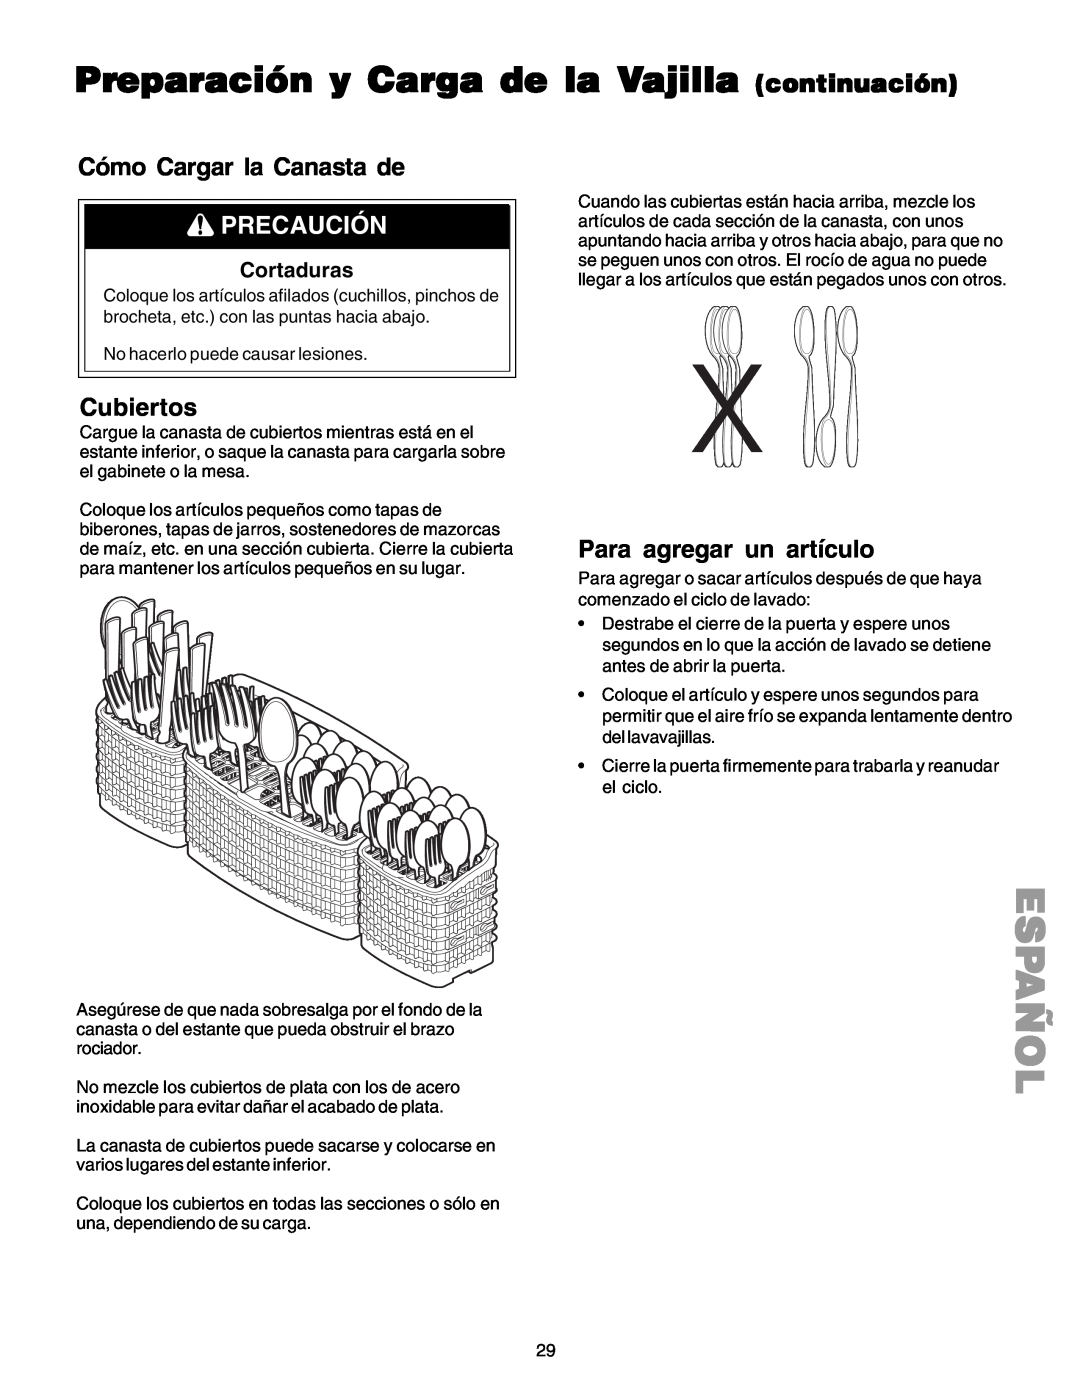 Kenmore 587.1523 manual Cómo Cargar la Canasta de, Precaución, Cubiertos, Para agregar un artículo, Español 